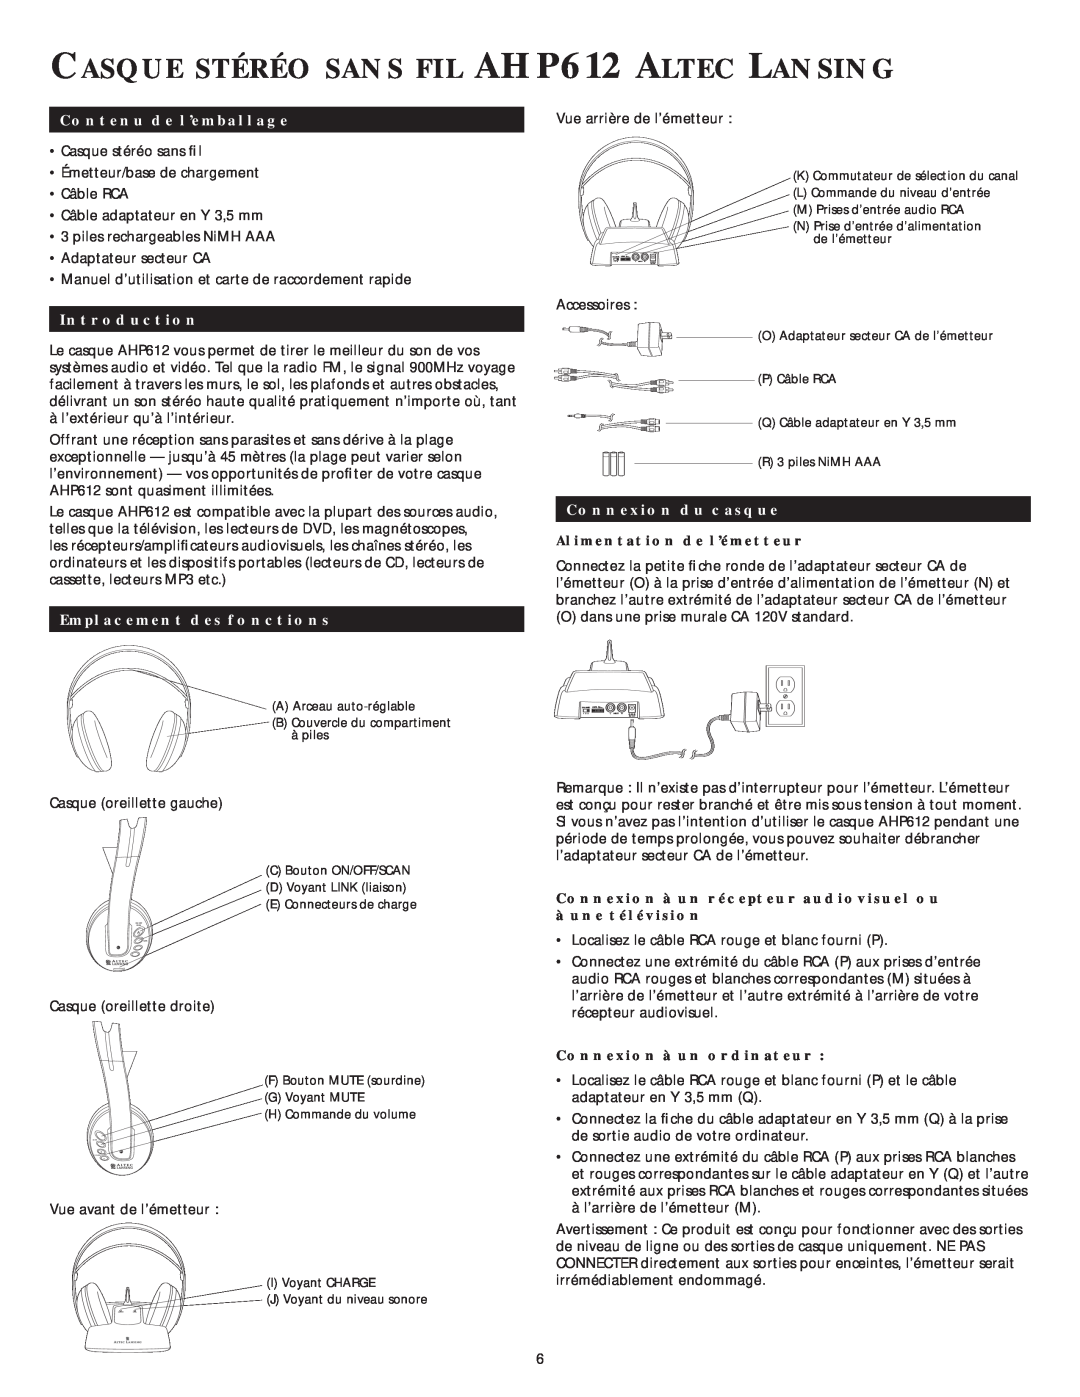 Altec Lansing AHP 612 manual CASQUE STÉRÉO SANS FIL AHP612 ALTEC LANSING, Contenu de l’emballage, Introduction 